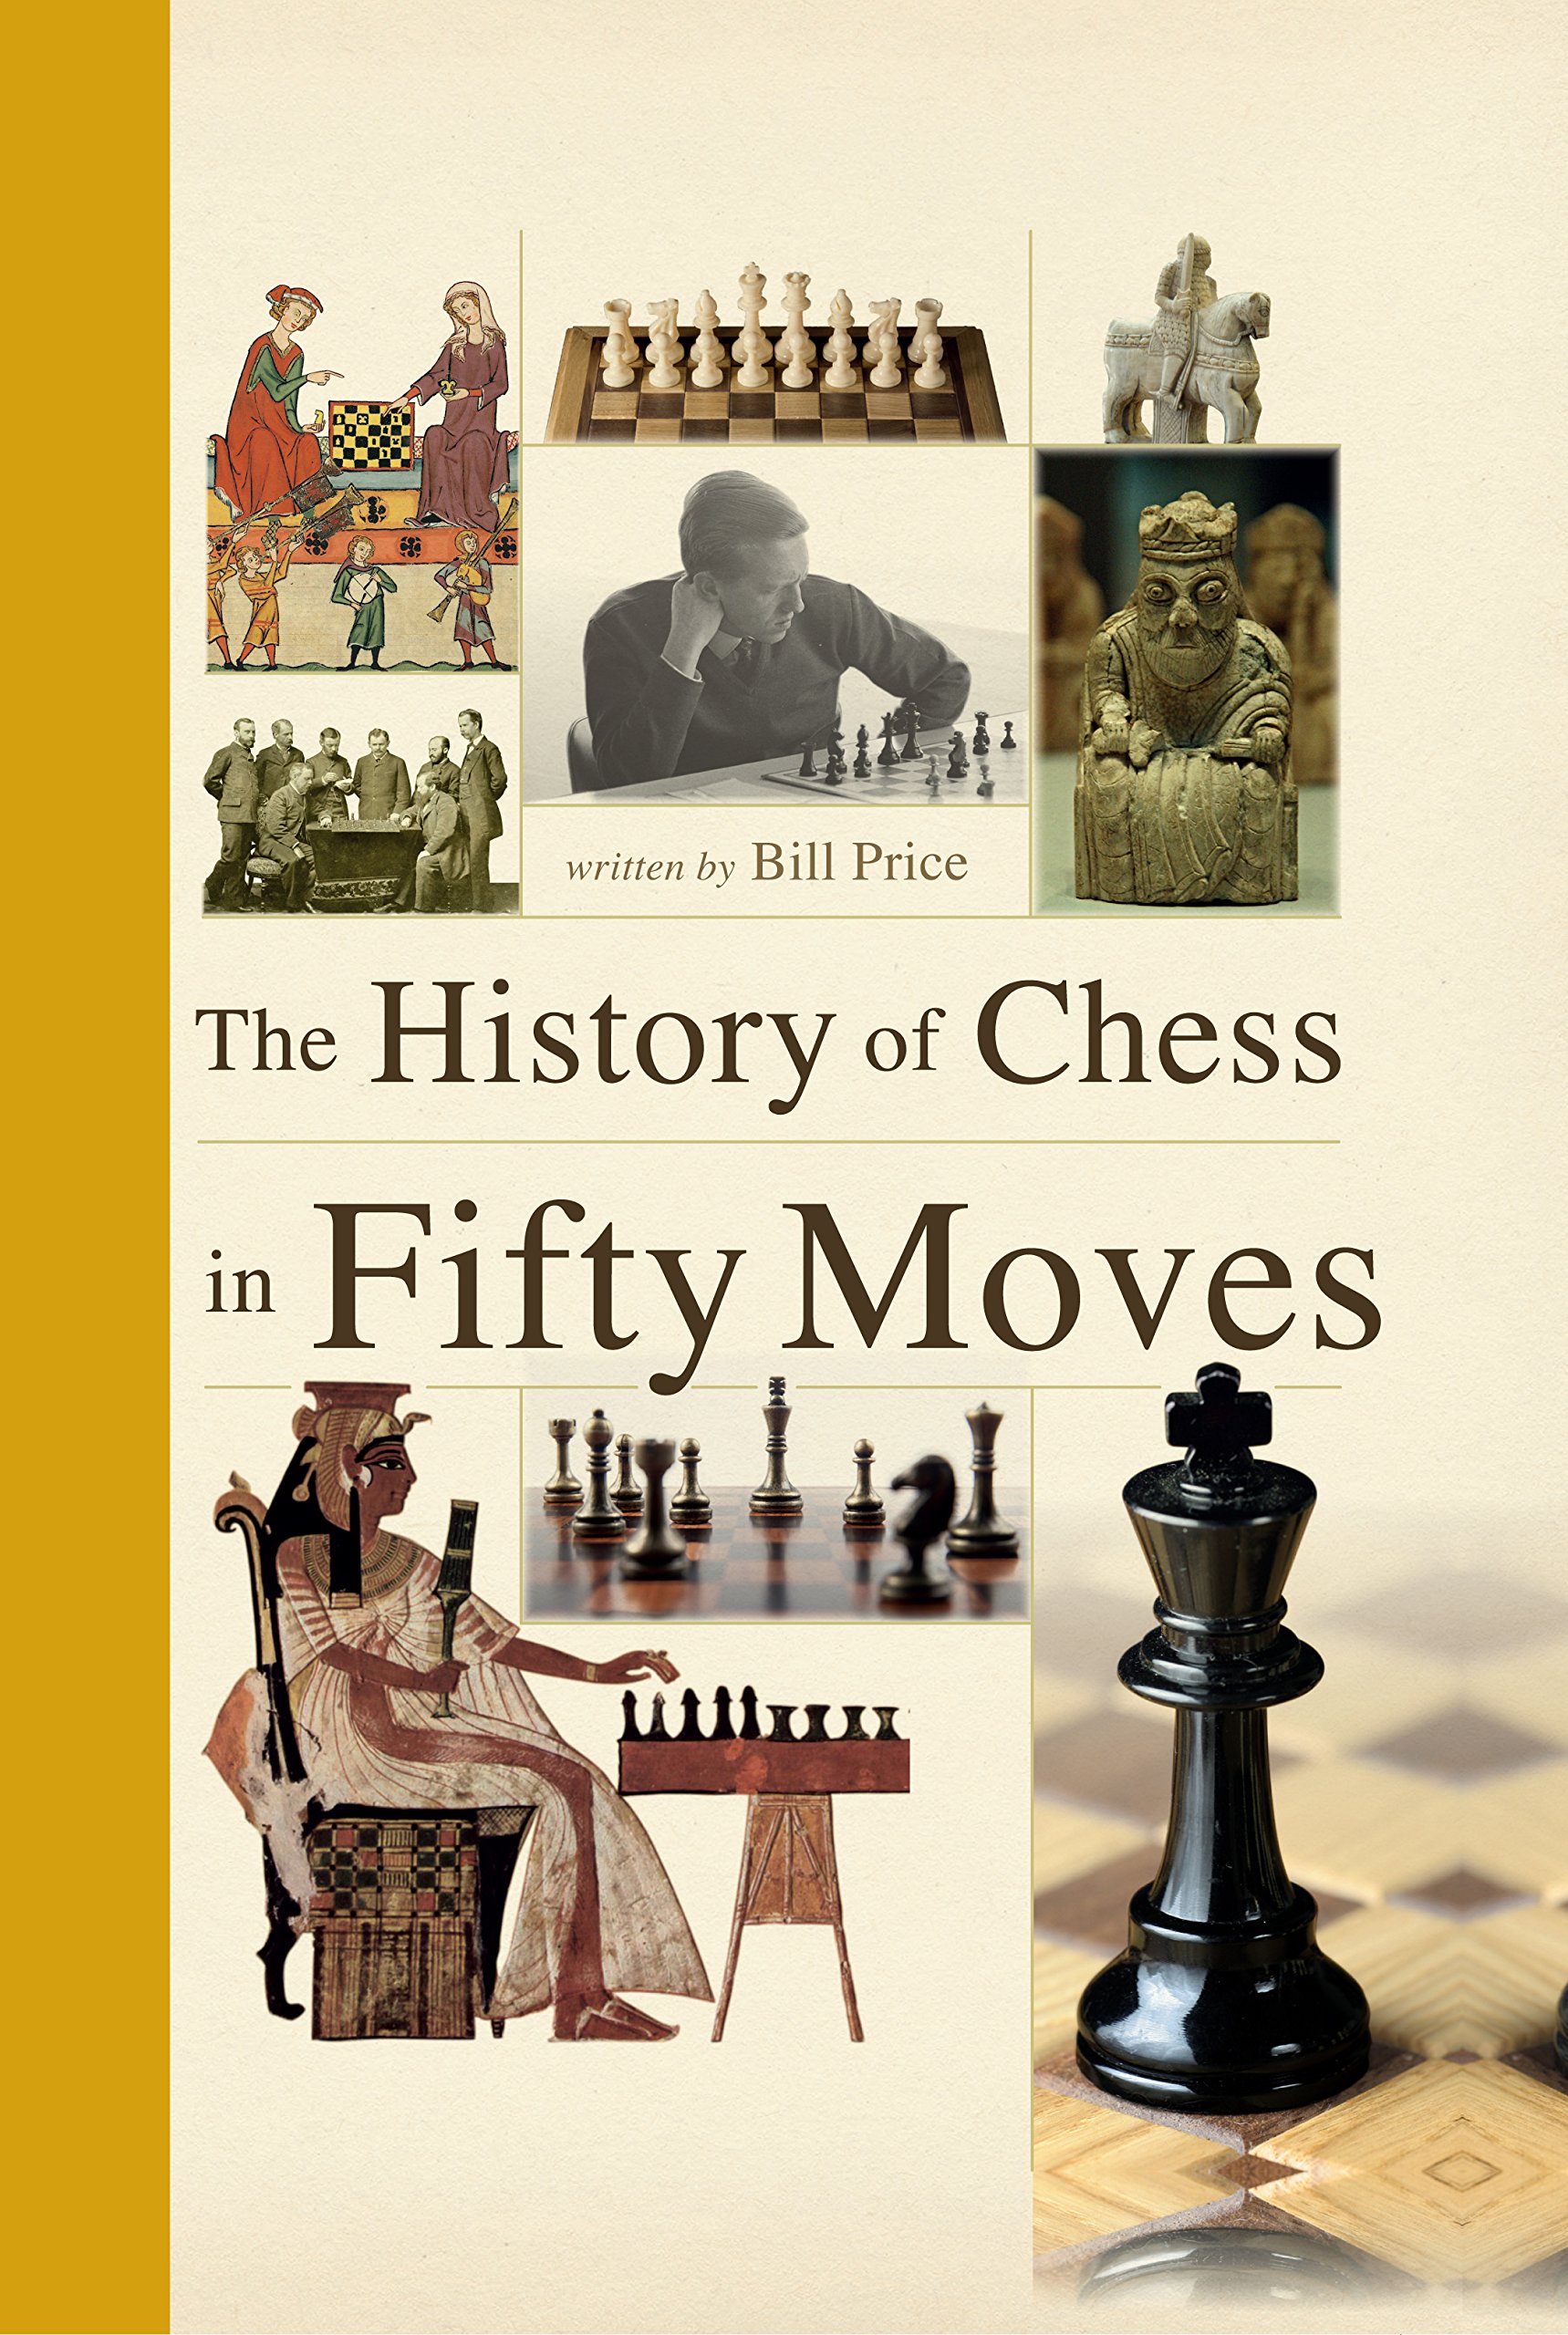 Chessmetrics Summary for 1970-1980